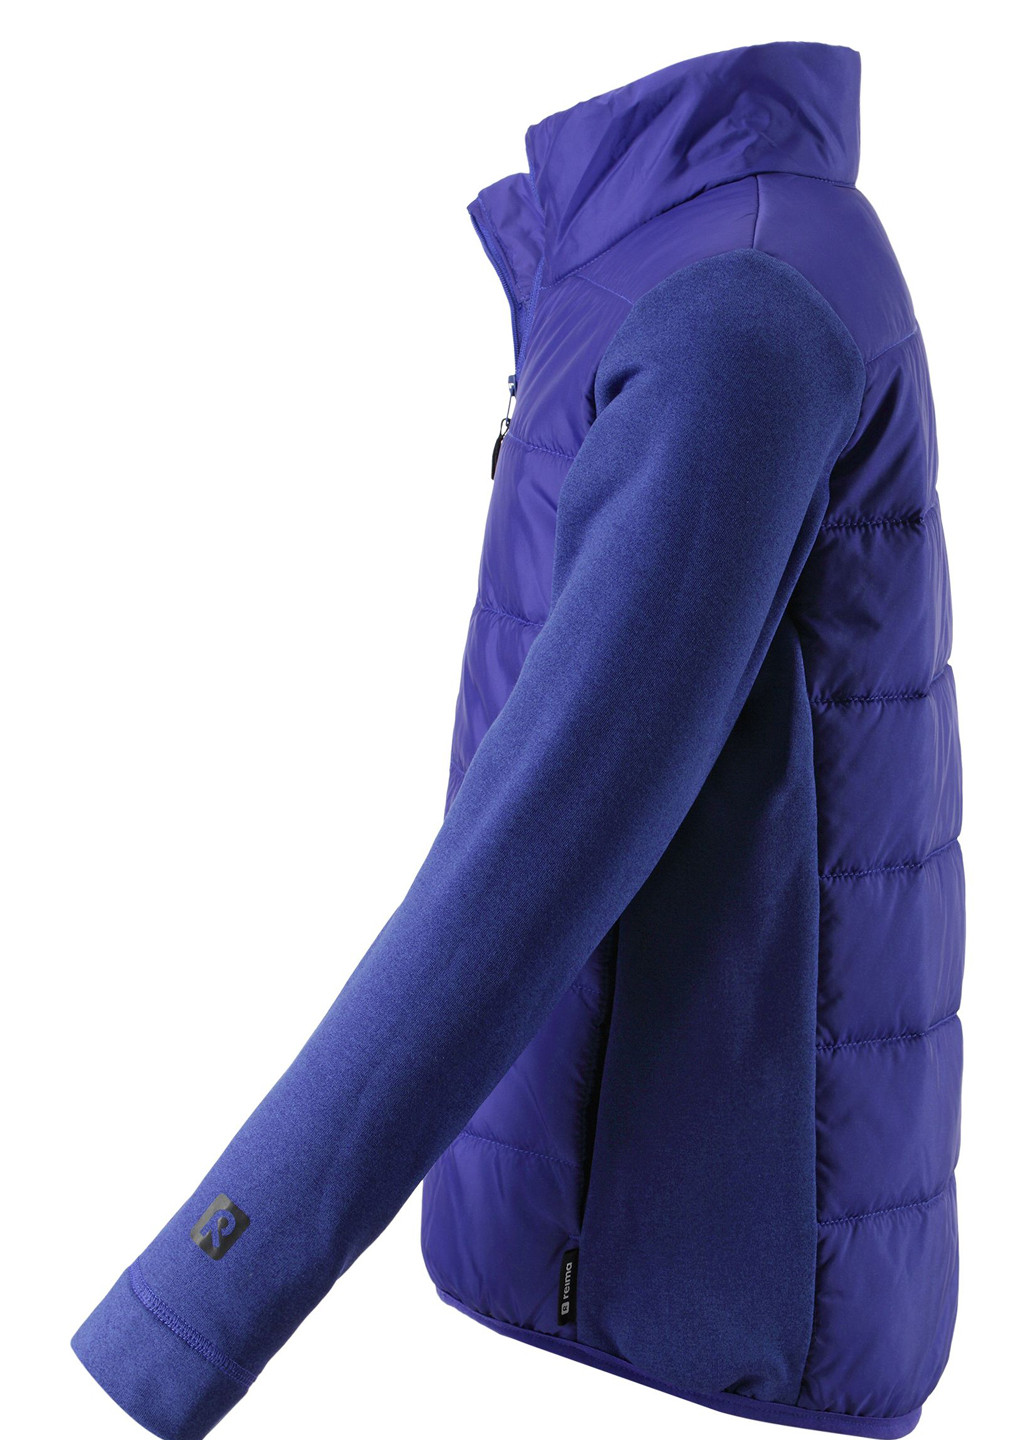 Фиолетовая демисезонная куртка Reima